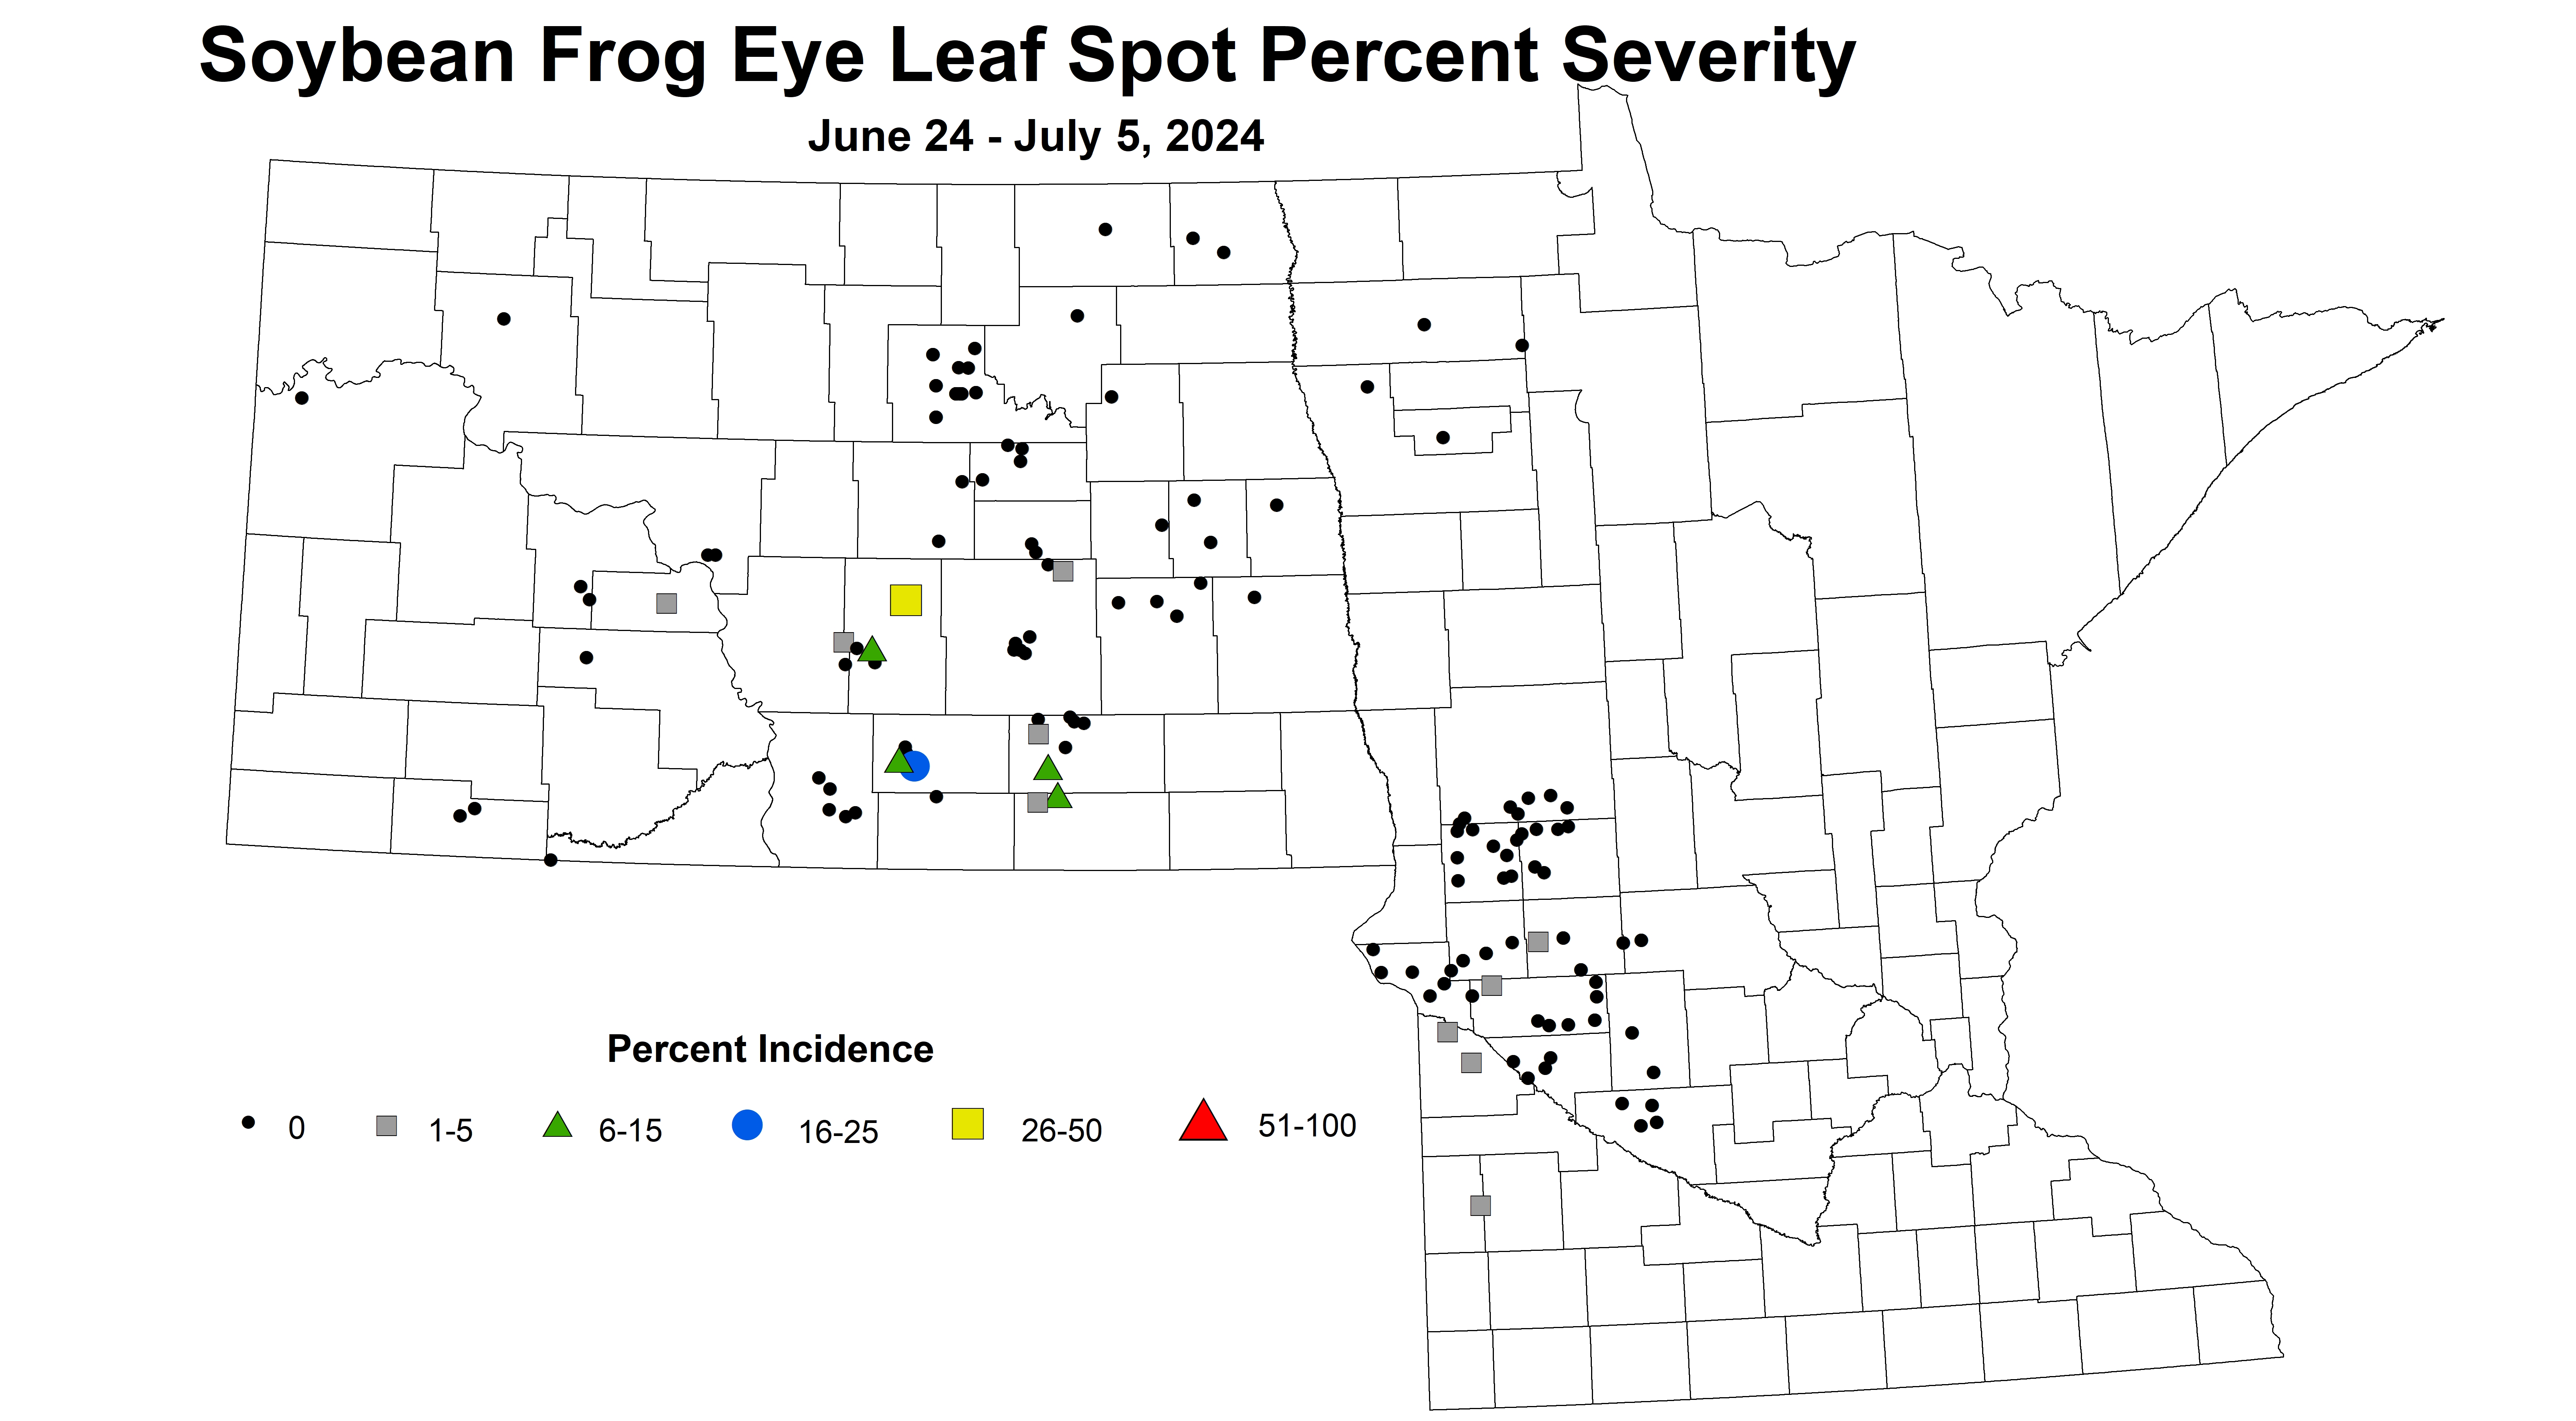 soybean frog eye leaf spot severity June 24 to July 5 2024